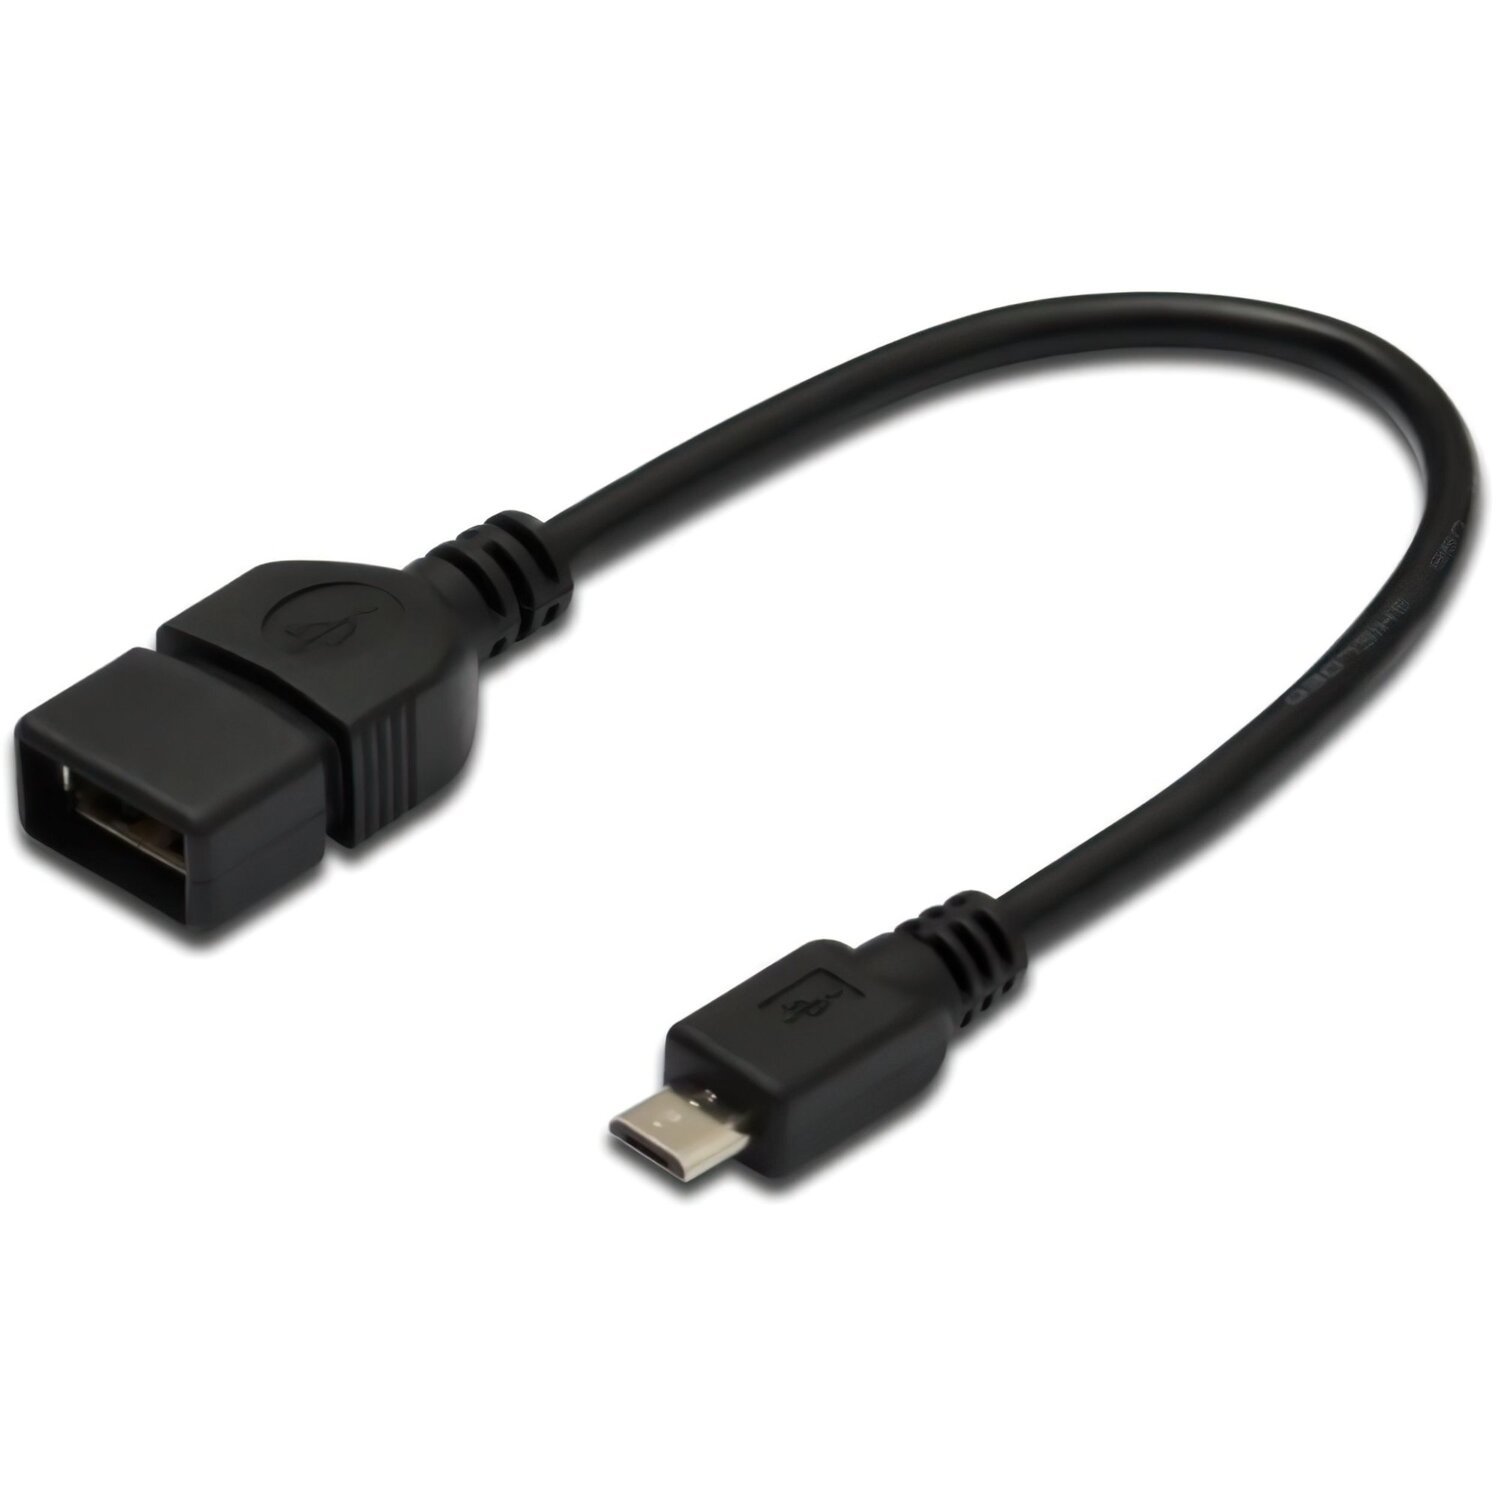 Адаптер Assmann USB-A to microUSB 0.2m Black (AK-300309-002-S)фото